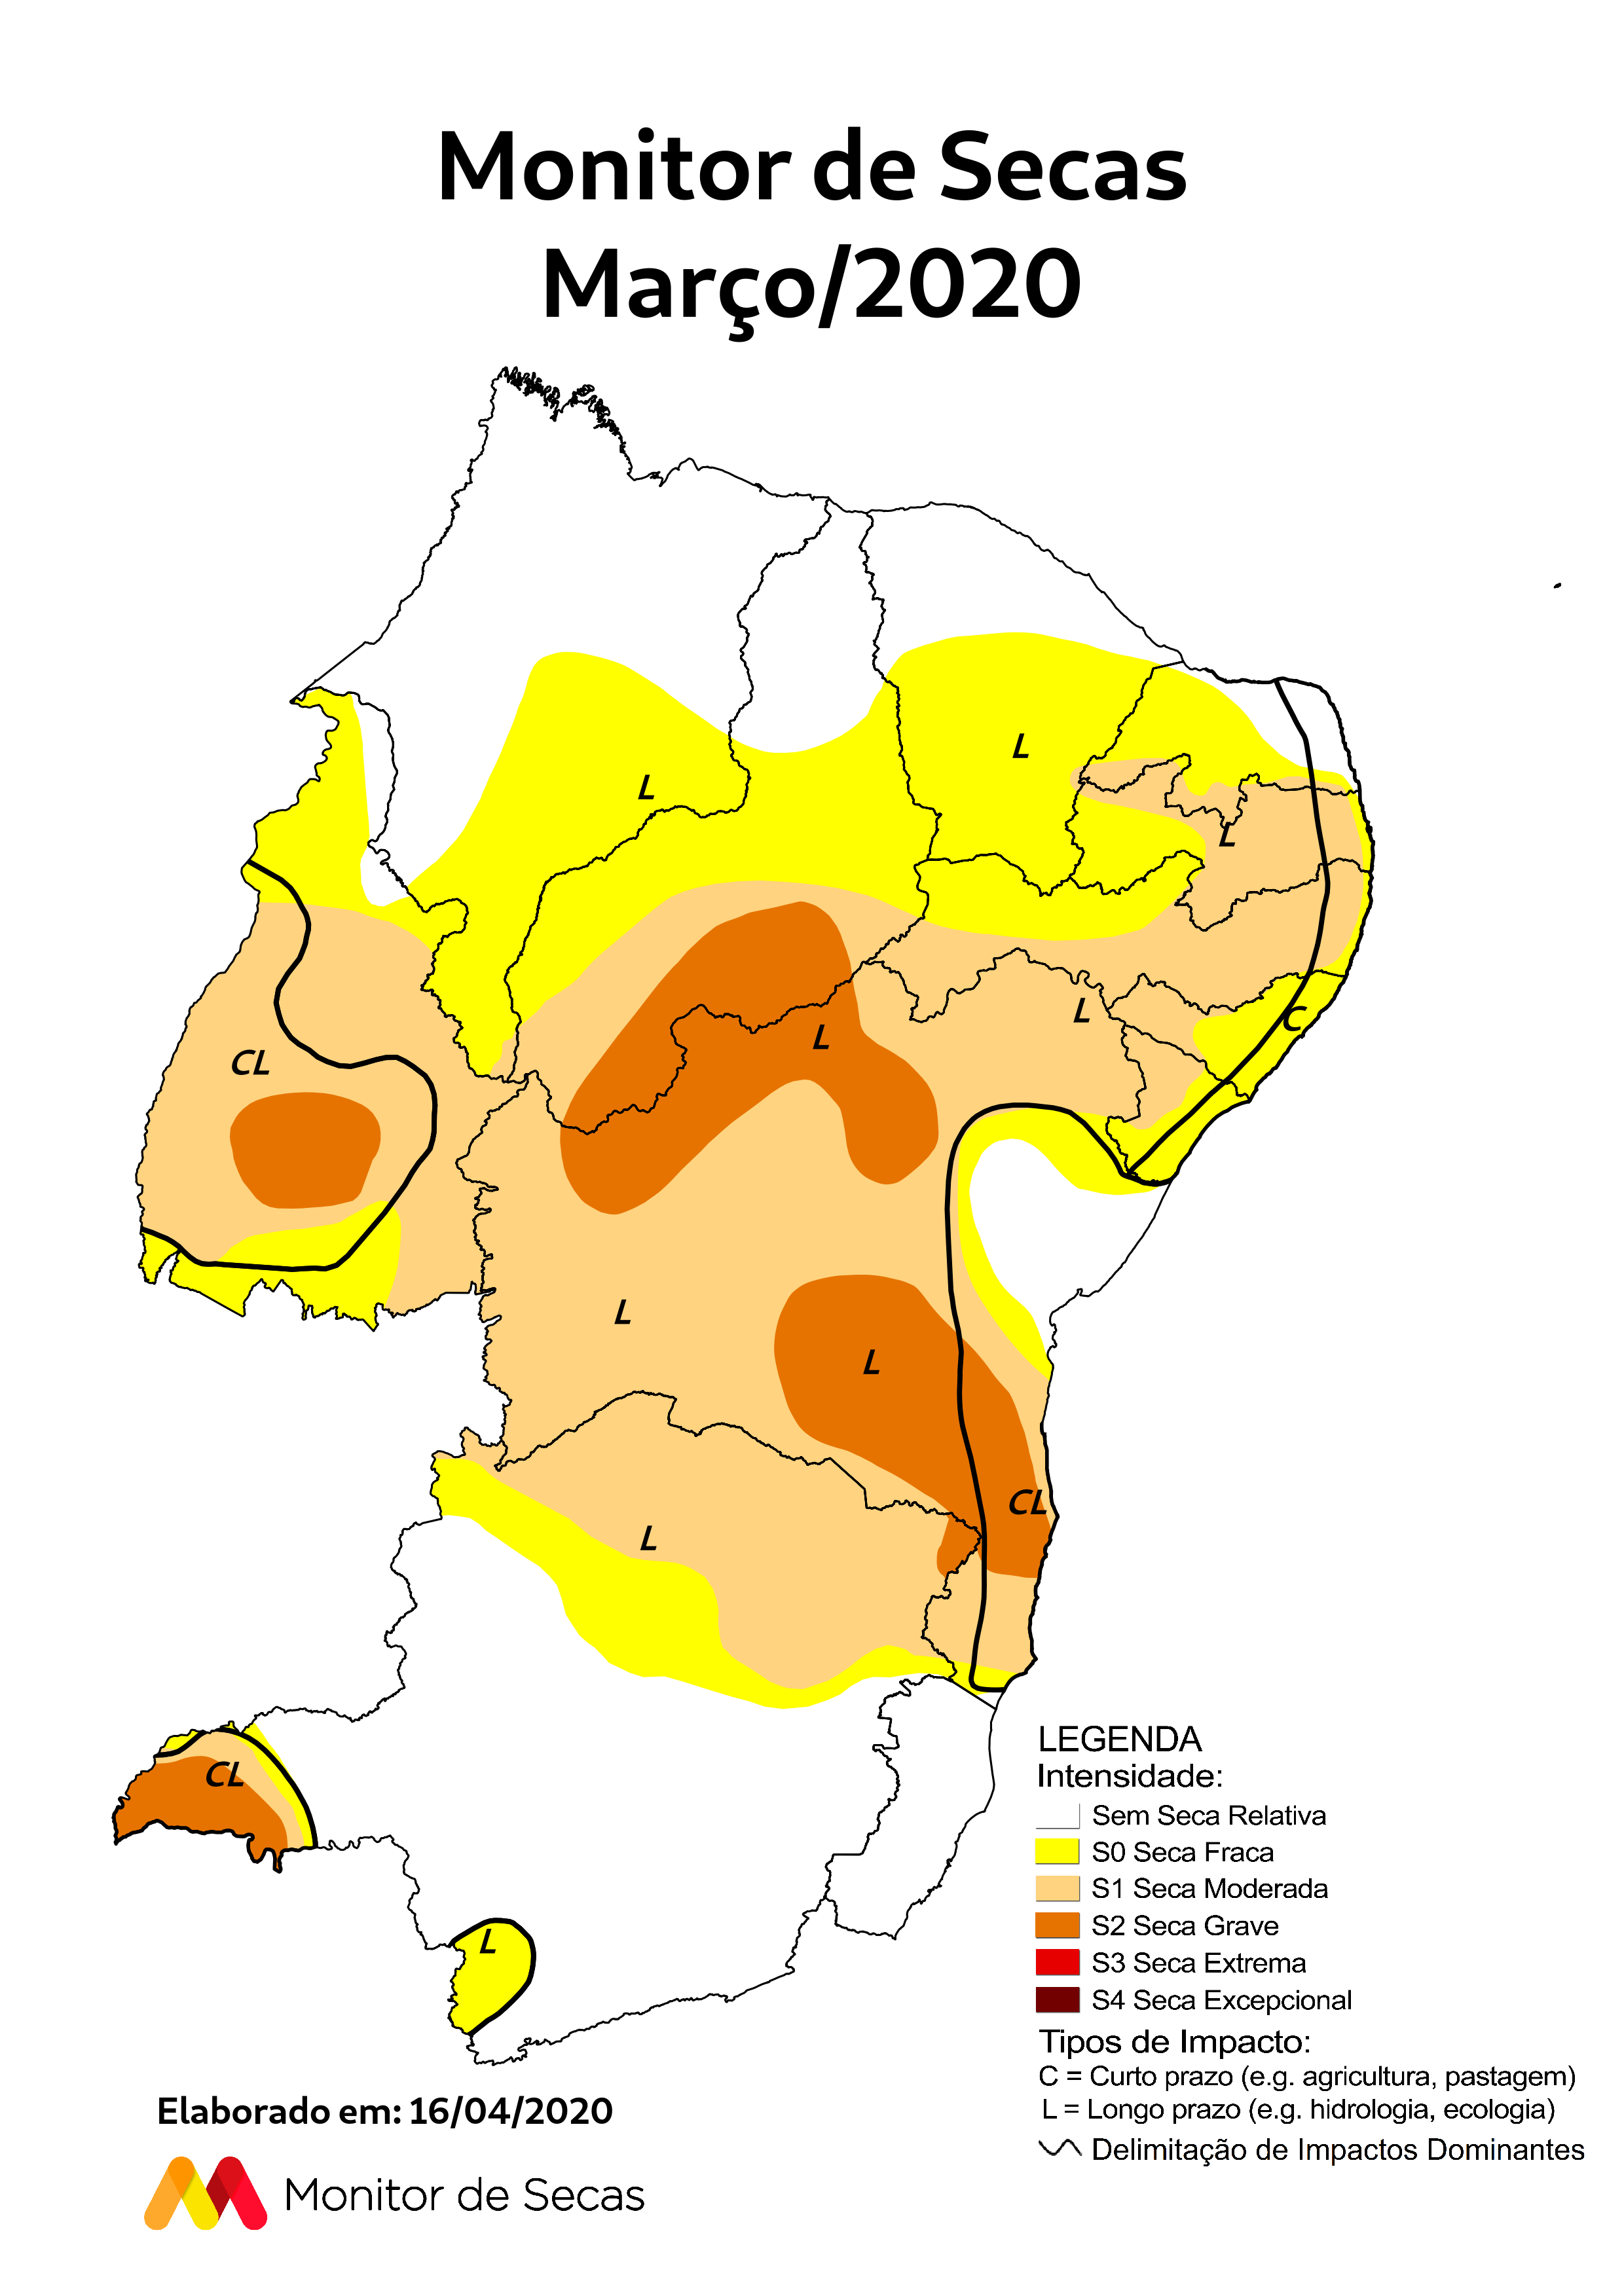 Mapa do Brasil, Estado de Rondônia e delimitação das Matas de